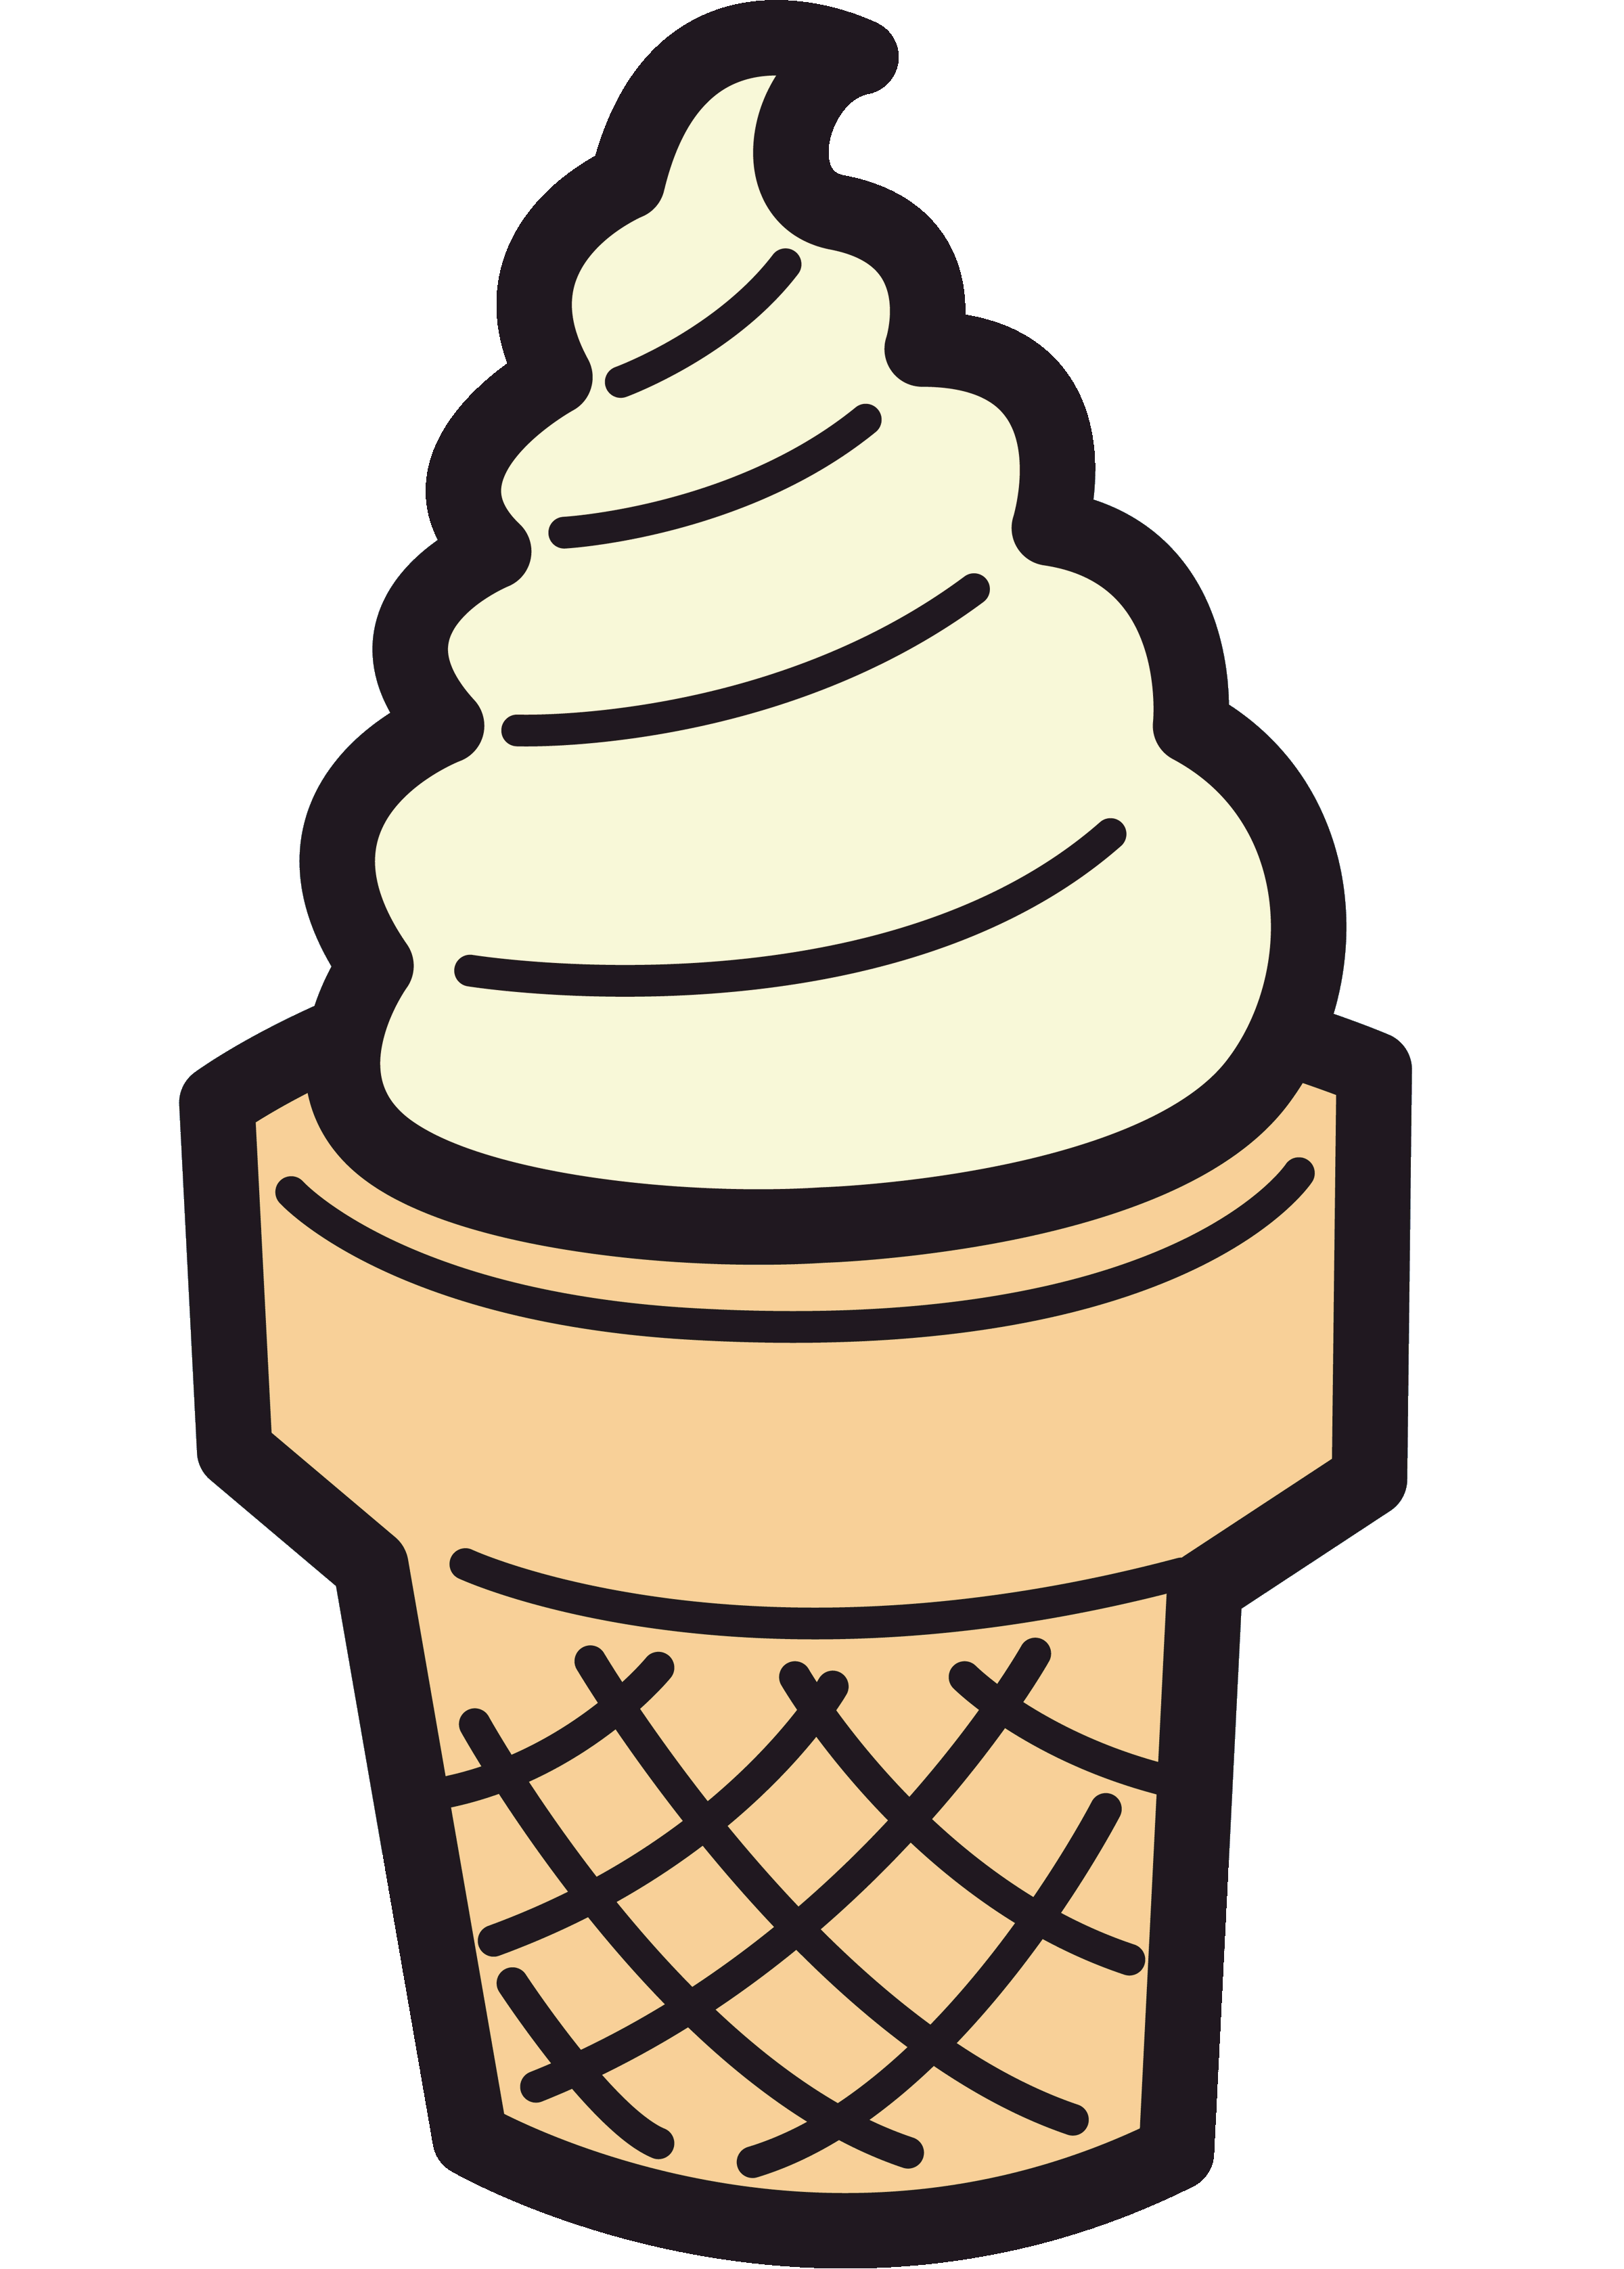 Ice cream sundae ice cream animated clipart